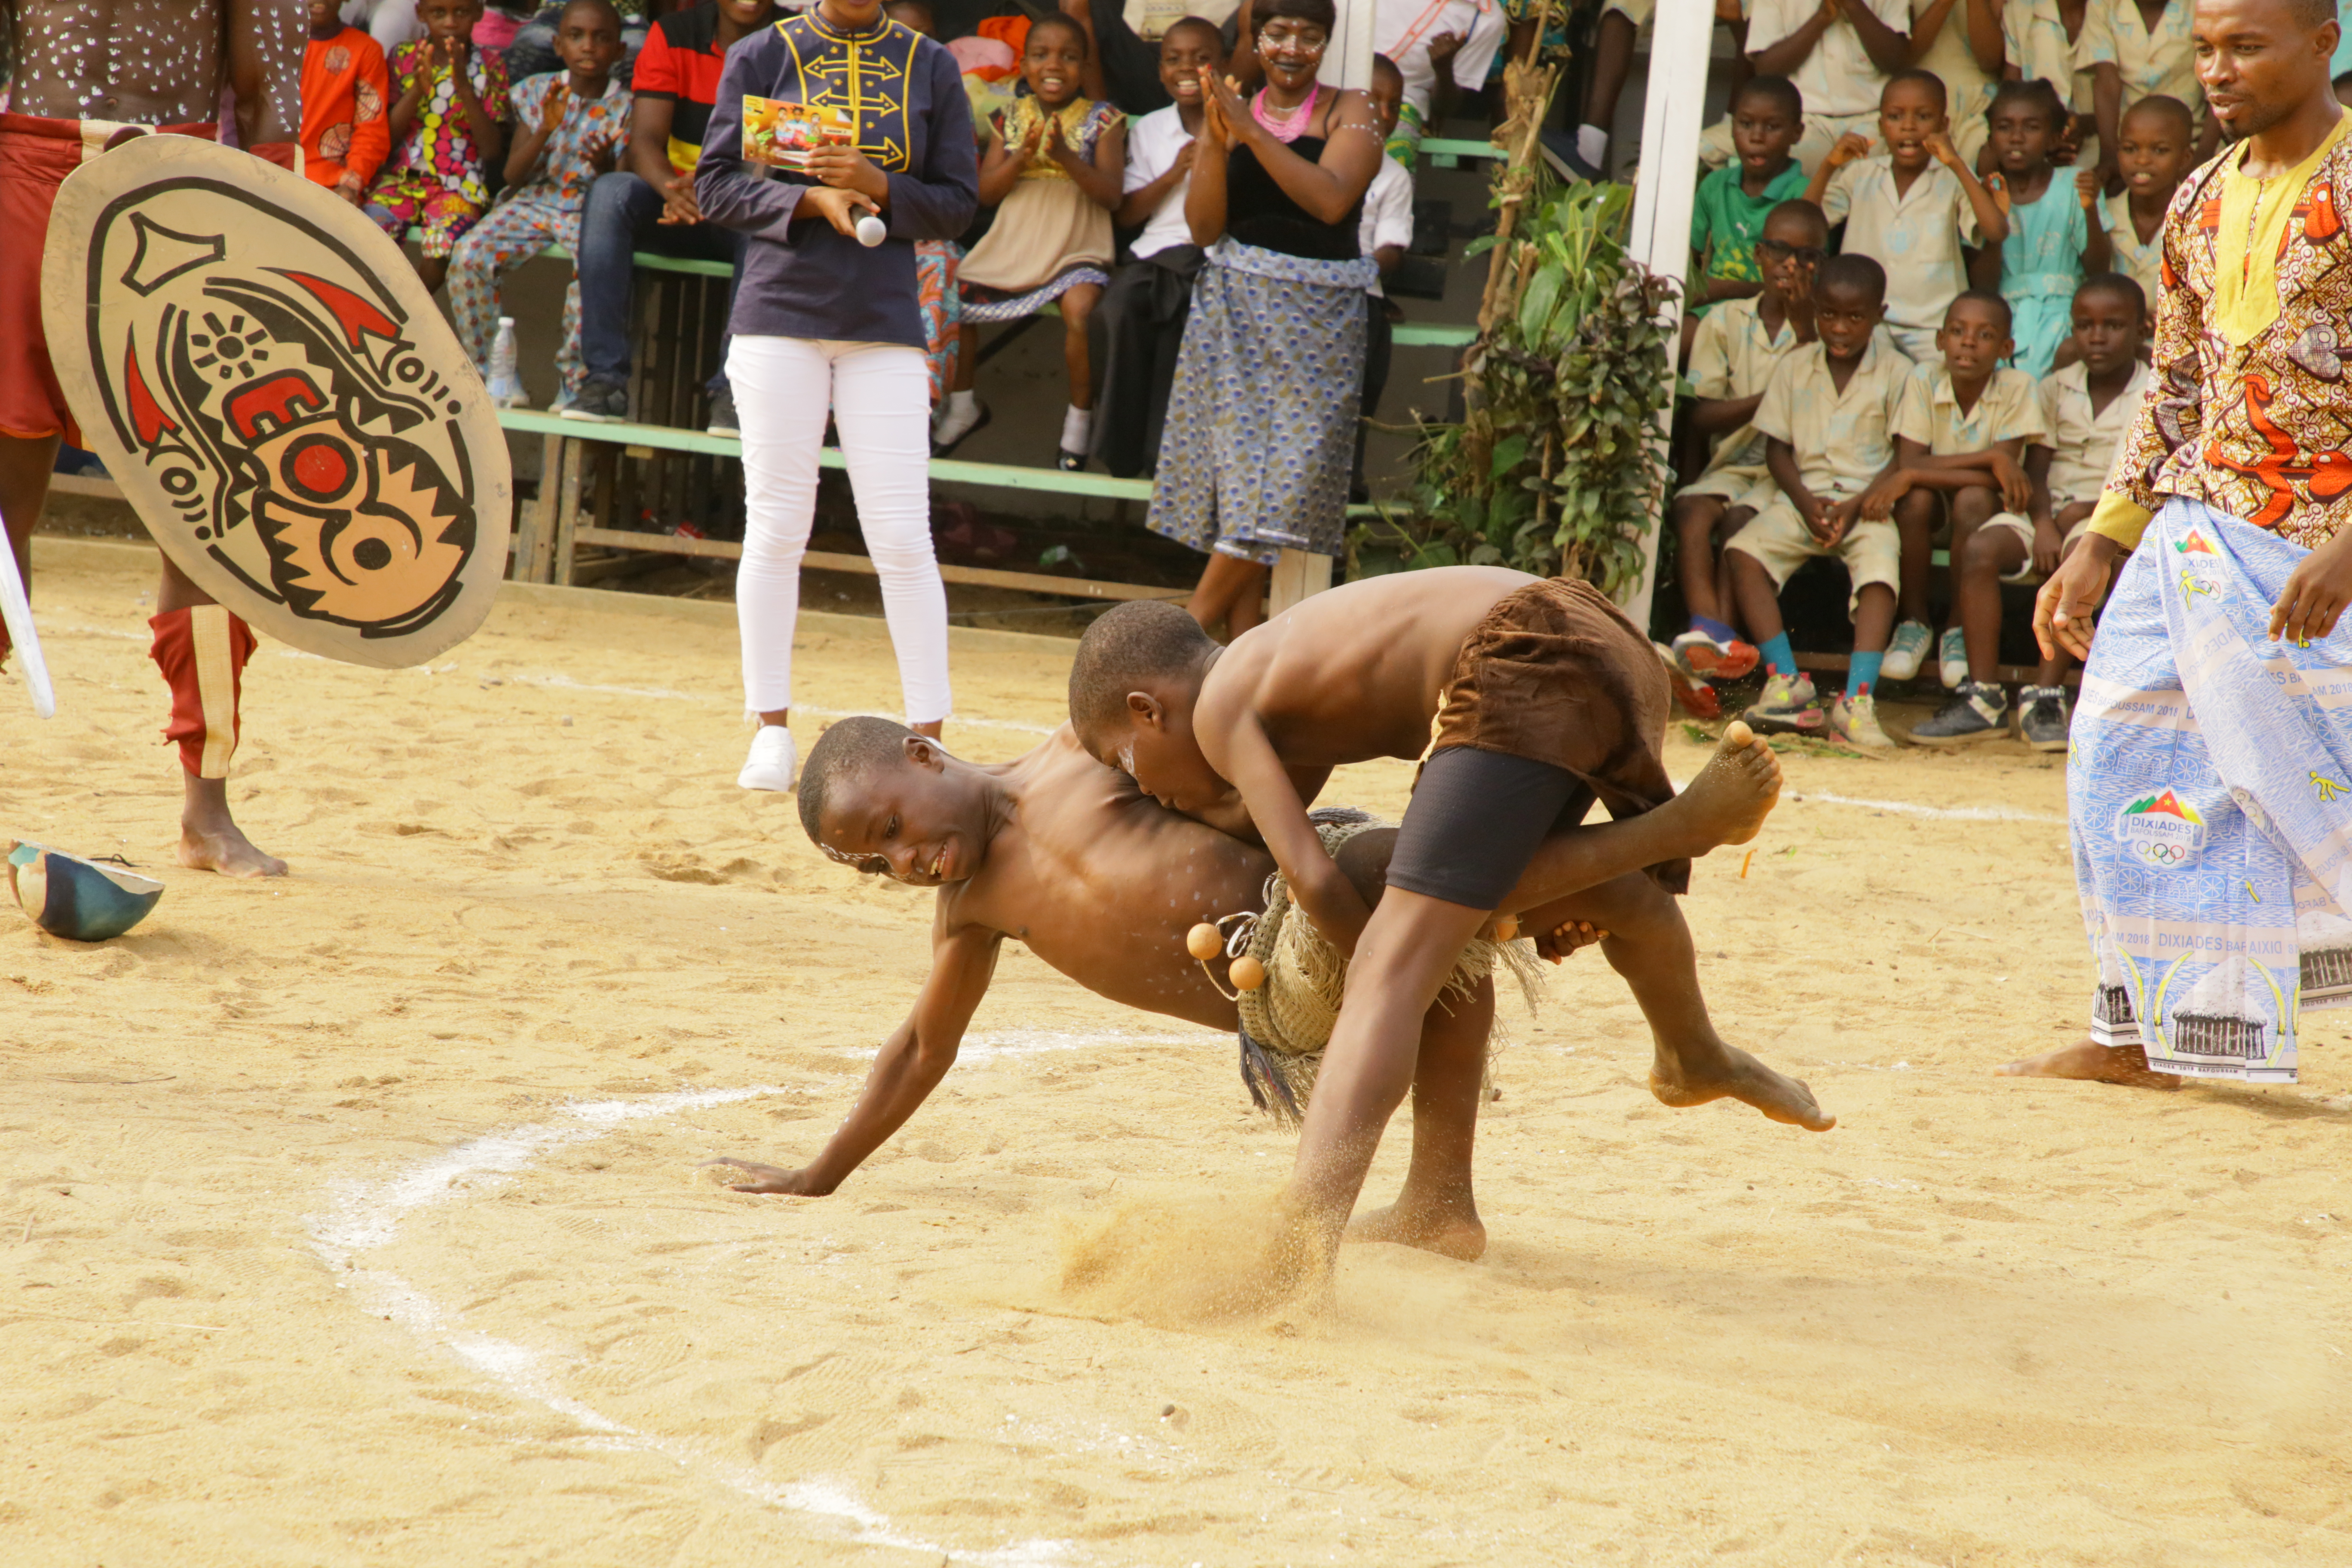 File:Enfants lutteurs in Cameroon.jpg - Wikipedia